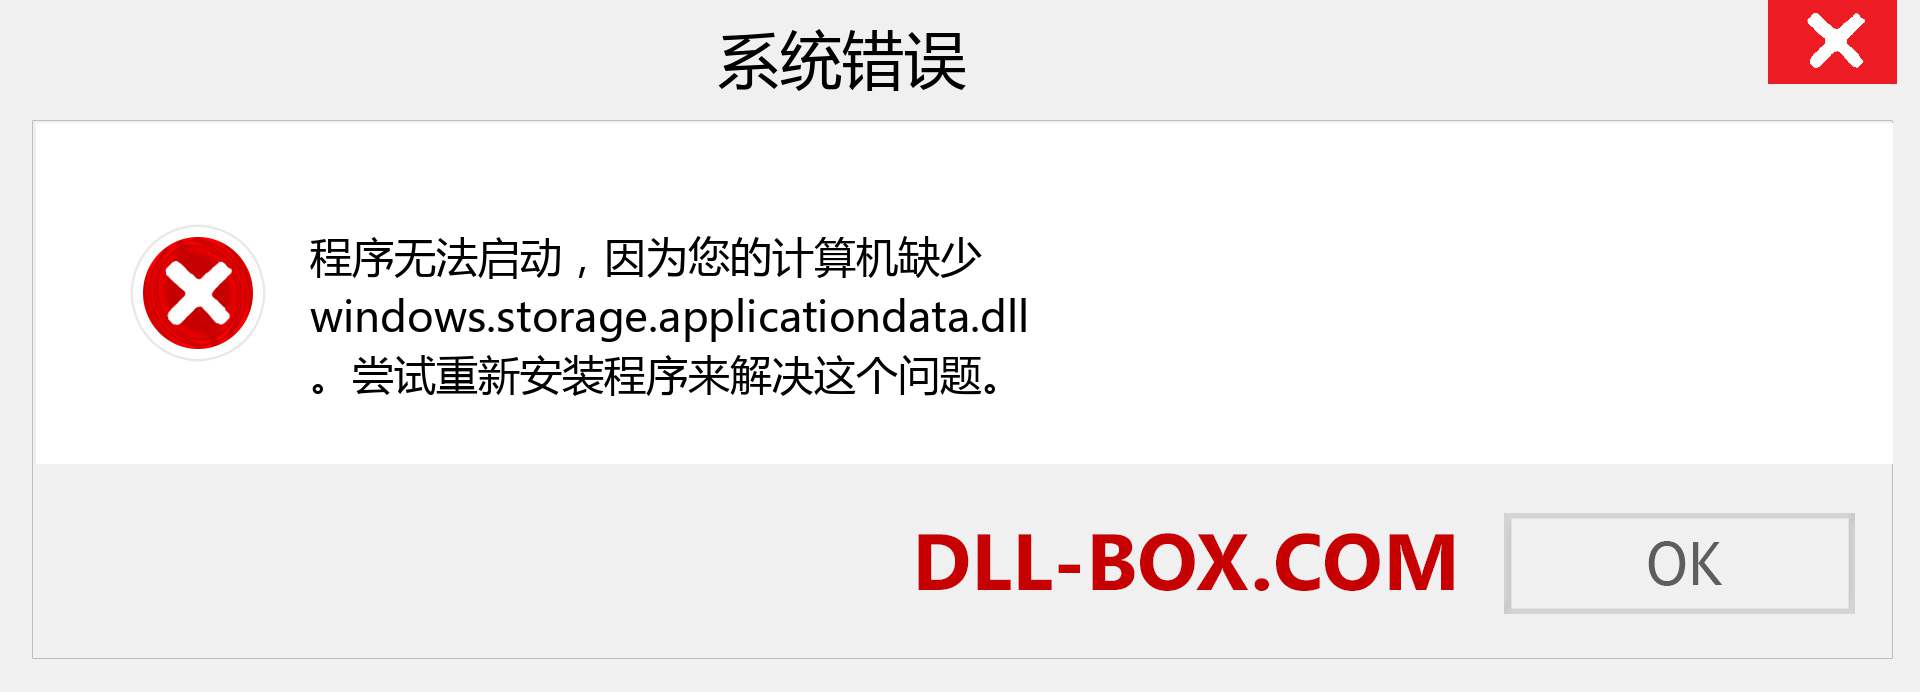 windows.storage.applicationdata.dll 文件丢失？。 适用于 Windows 7、8、10 的下载 - 修复 Windows、照片、图像上的 windows.storage.applicationdata dll 丢失错误